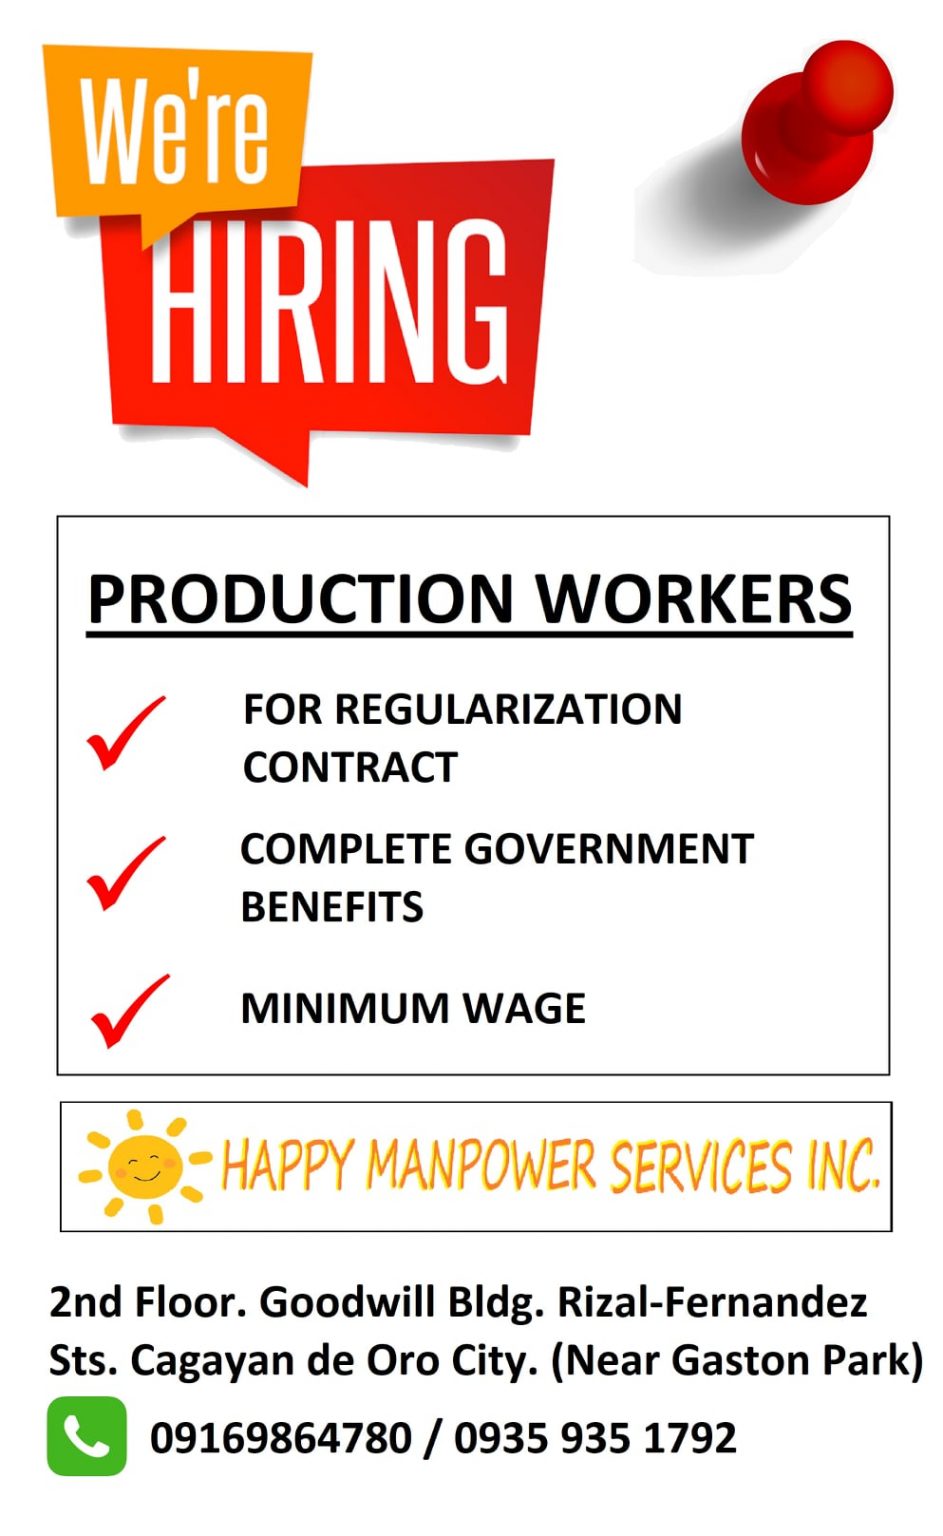 cagayan de oro job hiring 2014